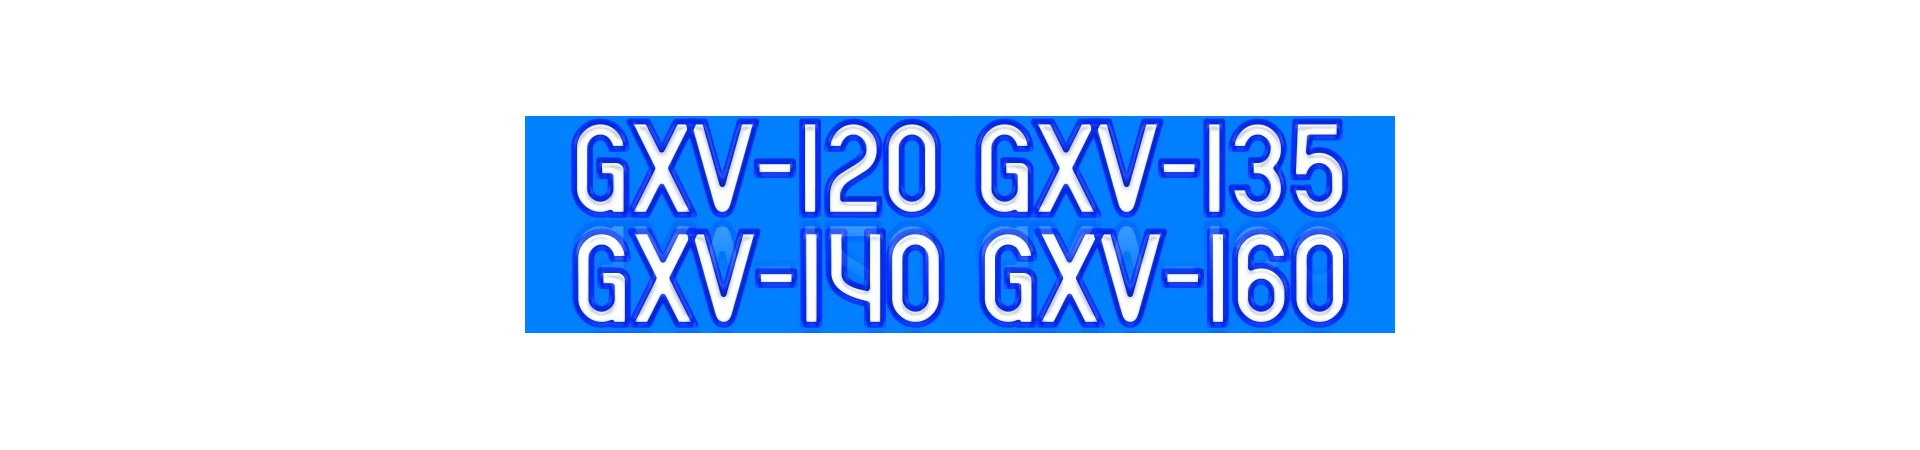 RECAMBIOS para Motor HONDA GXV120 GXV135 GXV140 GXV160